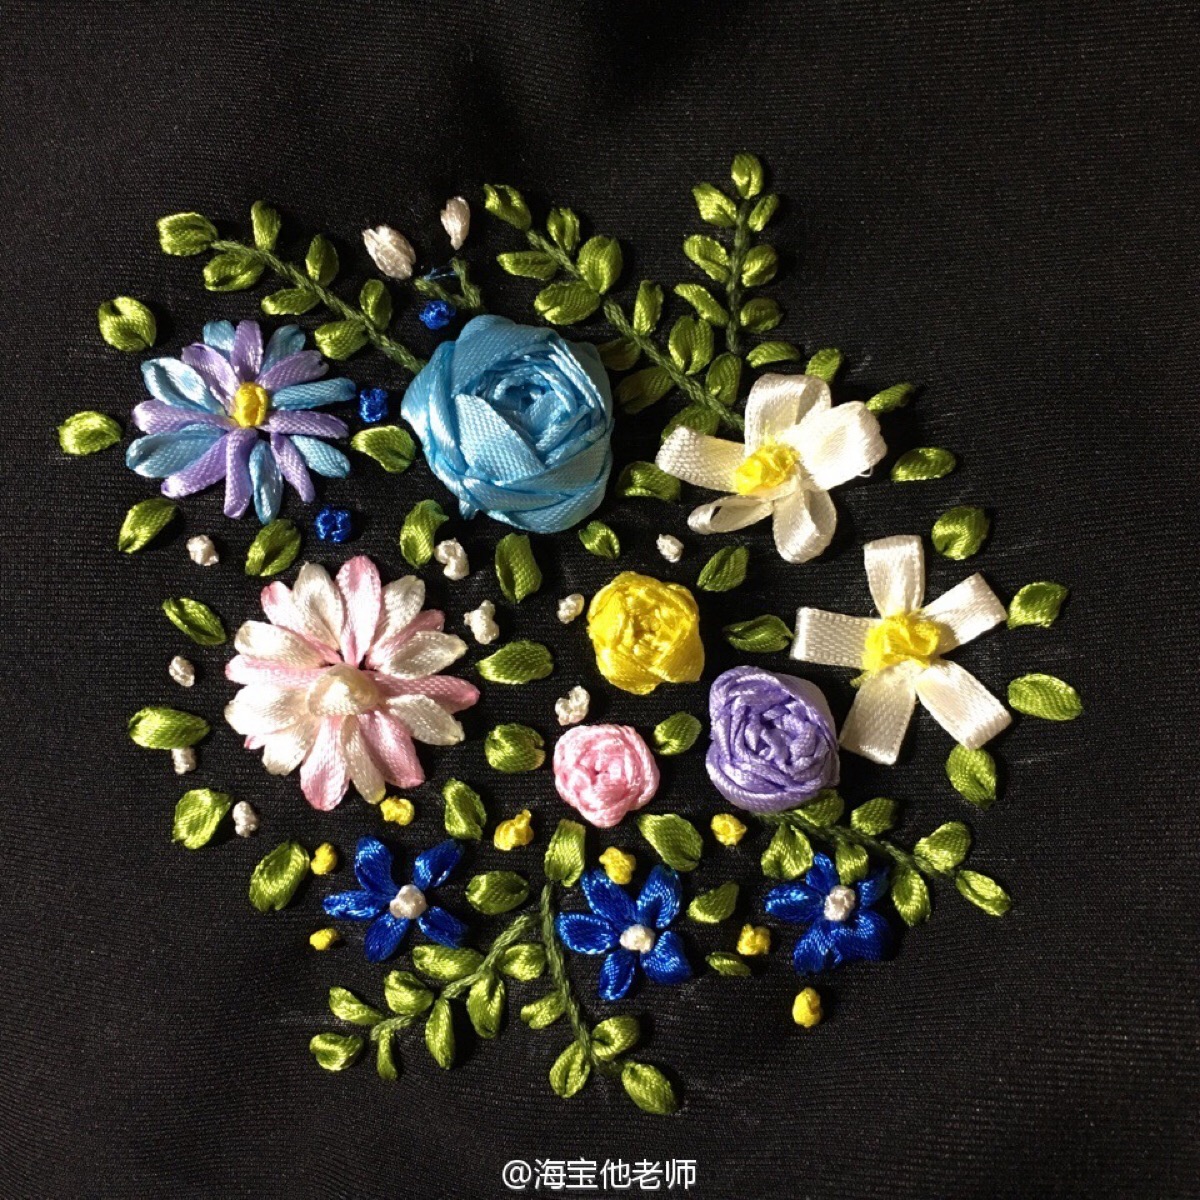 最喜欢的手工作品之一～丝带绣～刺绣～花朵